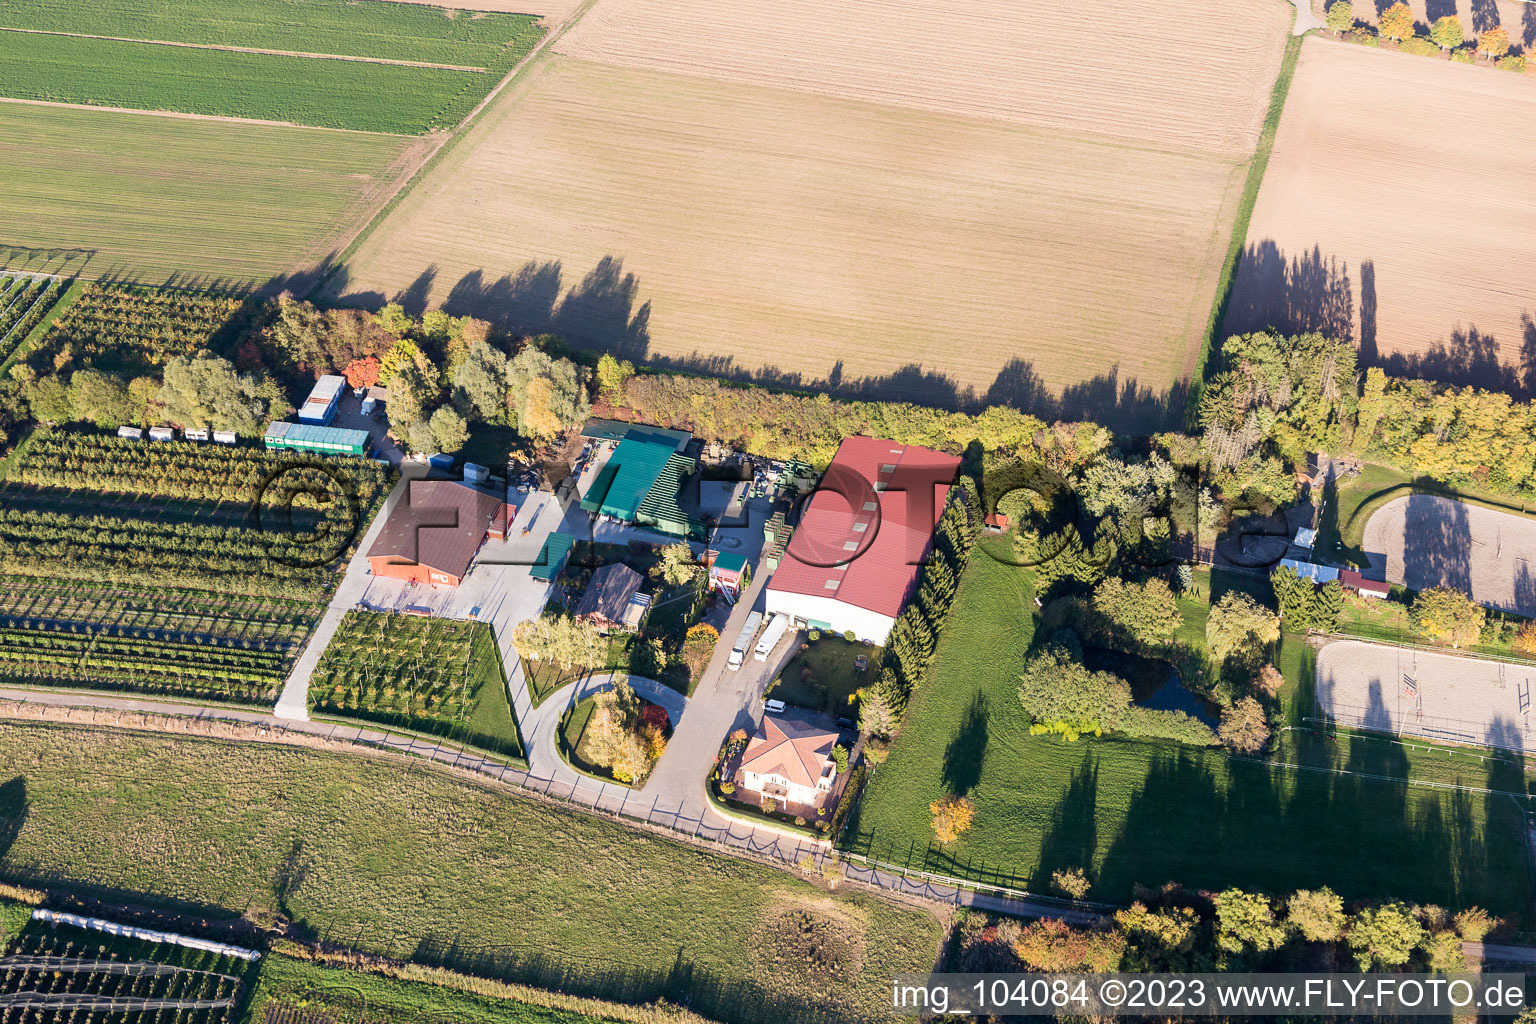 Ortsteil Herxheim in Herxheim bei Landau/Pfalz im Bundesland Rheinland-Pfalz, Deutschland von der Drohne aus gesehen